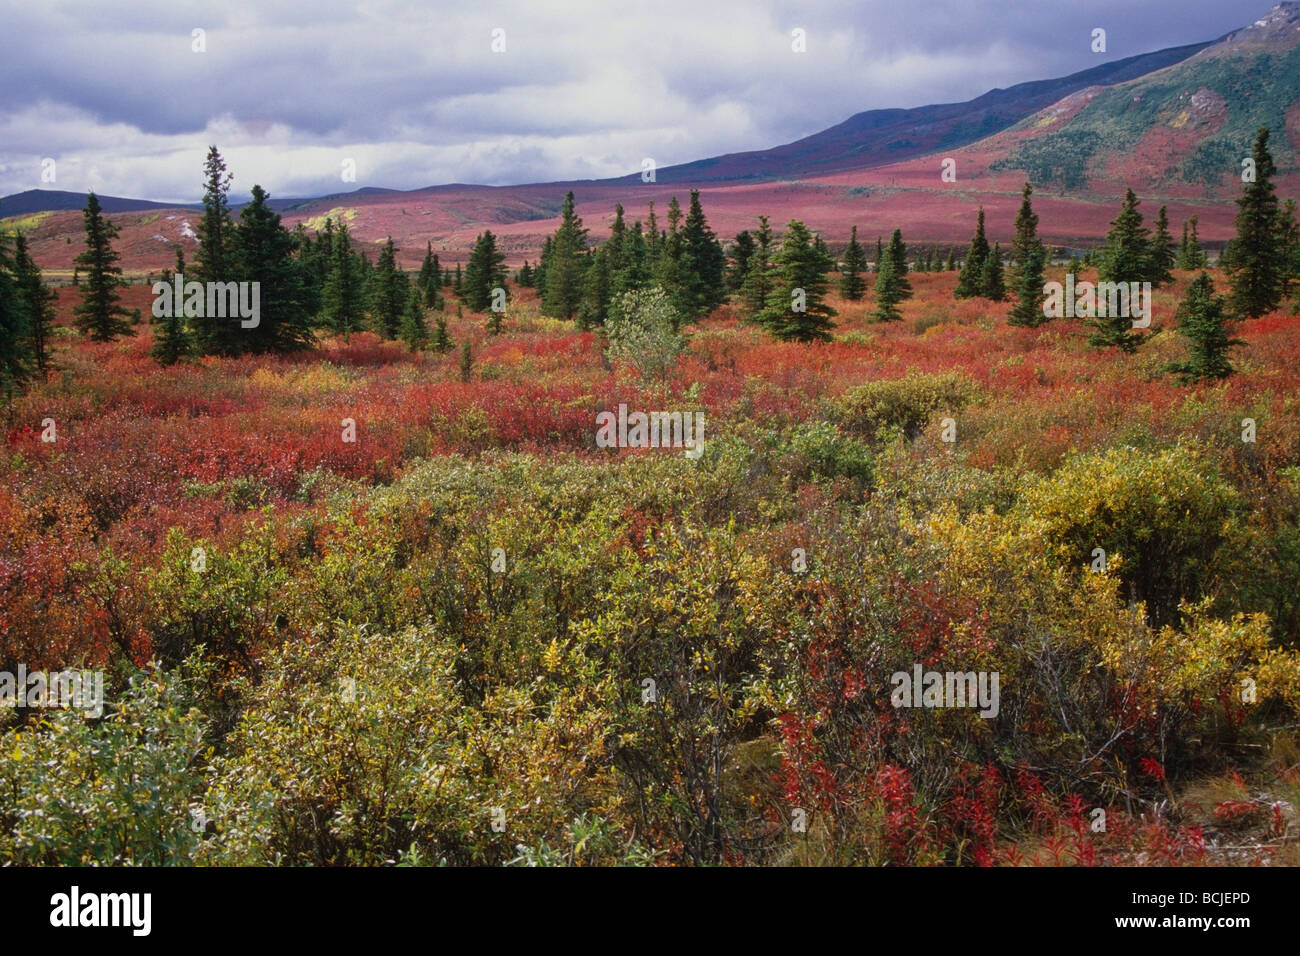 Vue panoramique de la toundra et la forêt boréale dans le Parc National Denali pendant les couleurs de l'automne à l'intérieur de l'Alaska. Banque D'Images